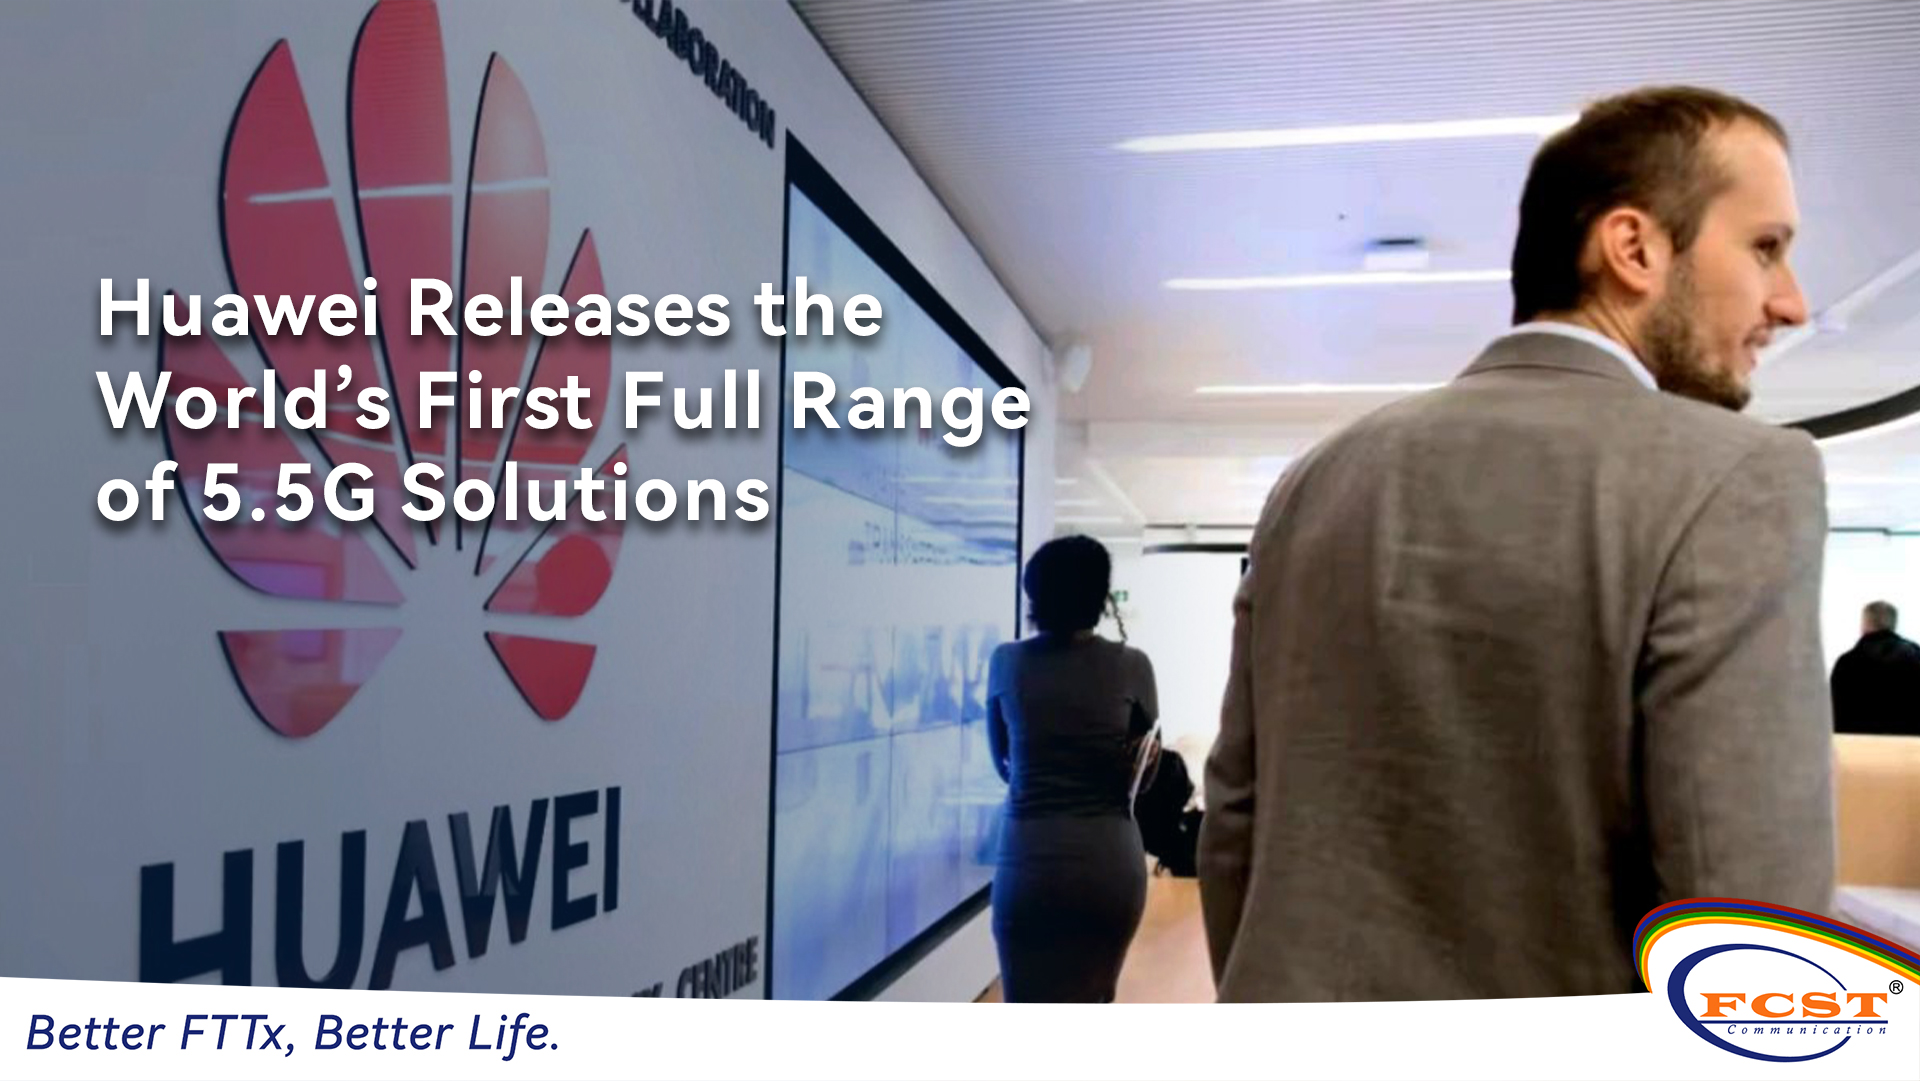 Huawei lanza el primer rango completo del mundo de 5.5 g de soluciones